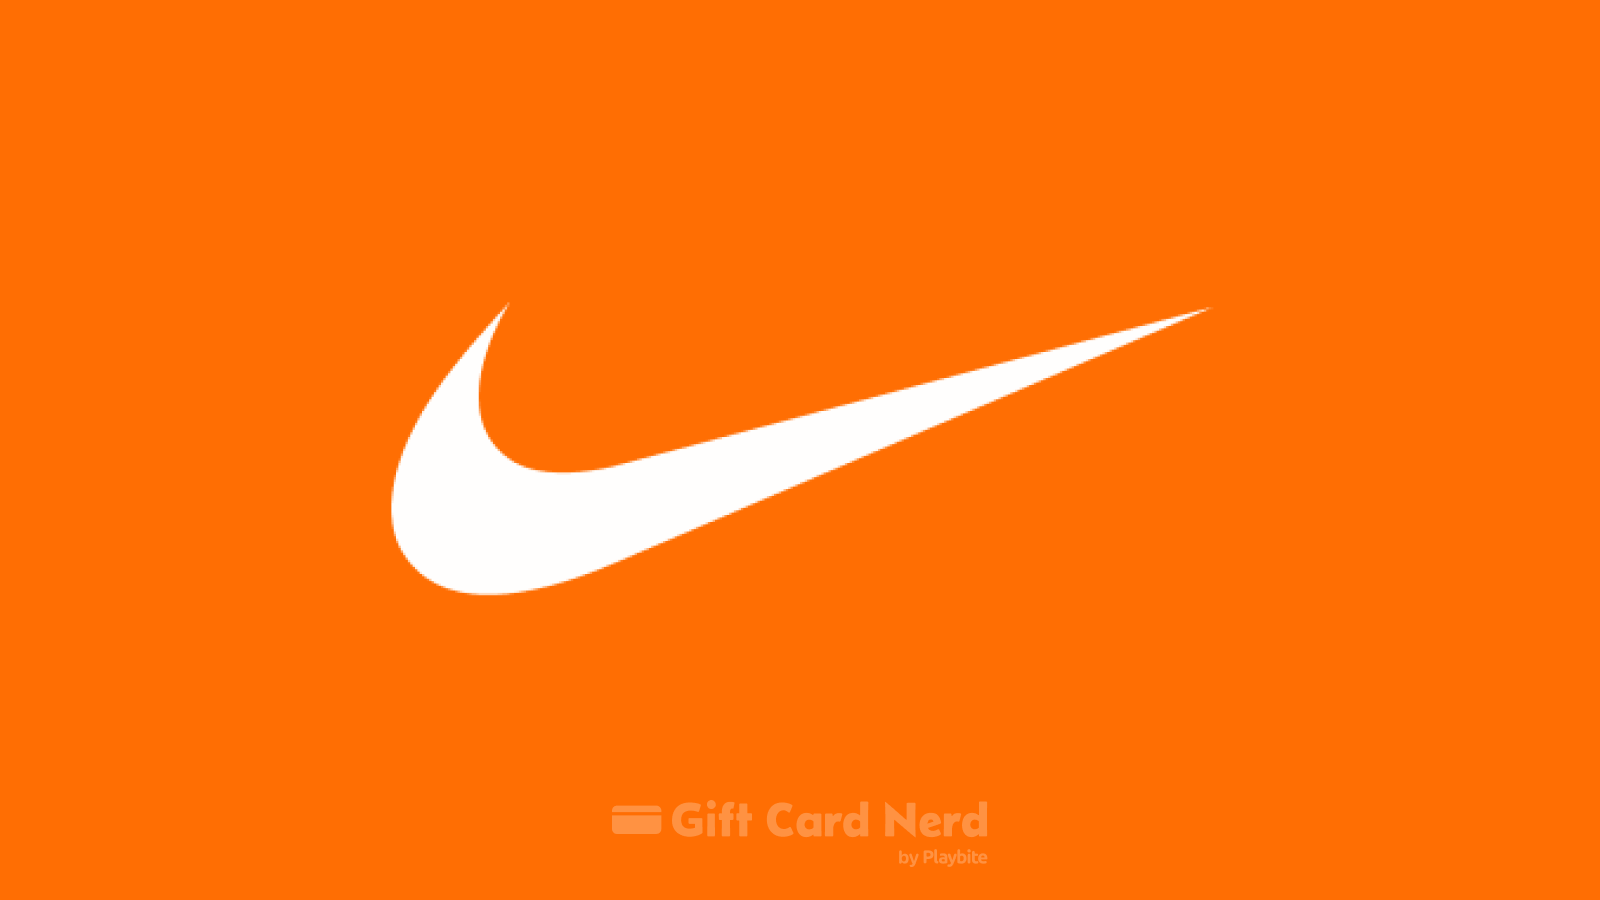 Can I Use a Nike Gift Card on Grubhub?